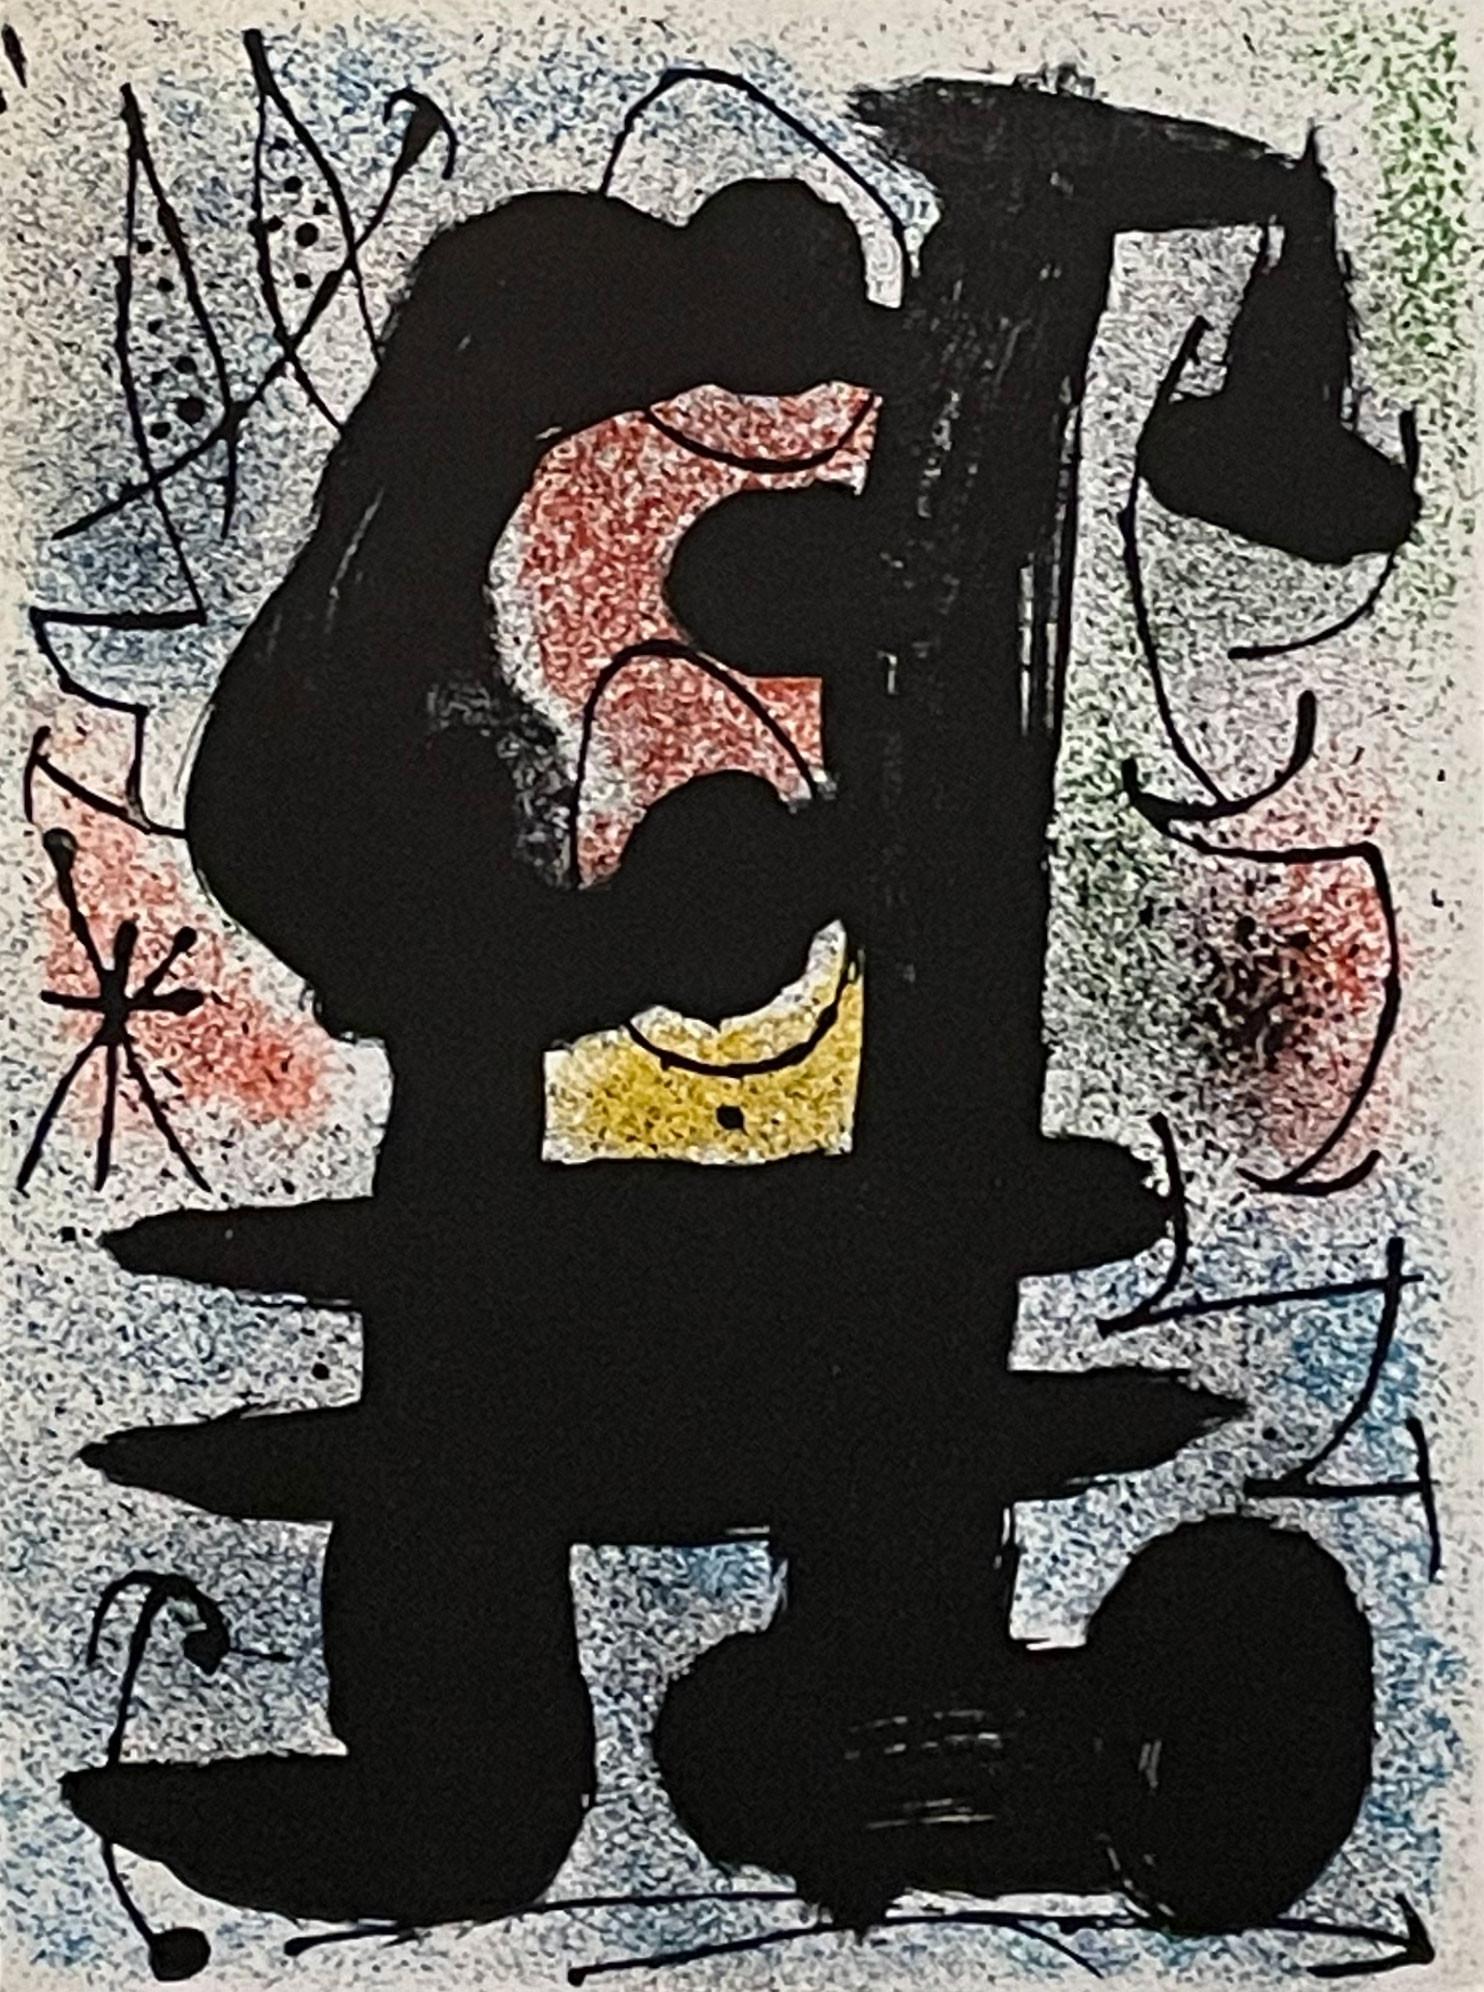 Derriere le Miroir #164-165 (L'Oiseau Solaire) - Print by Joan Miró